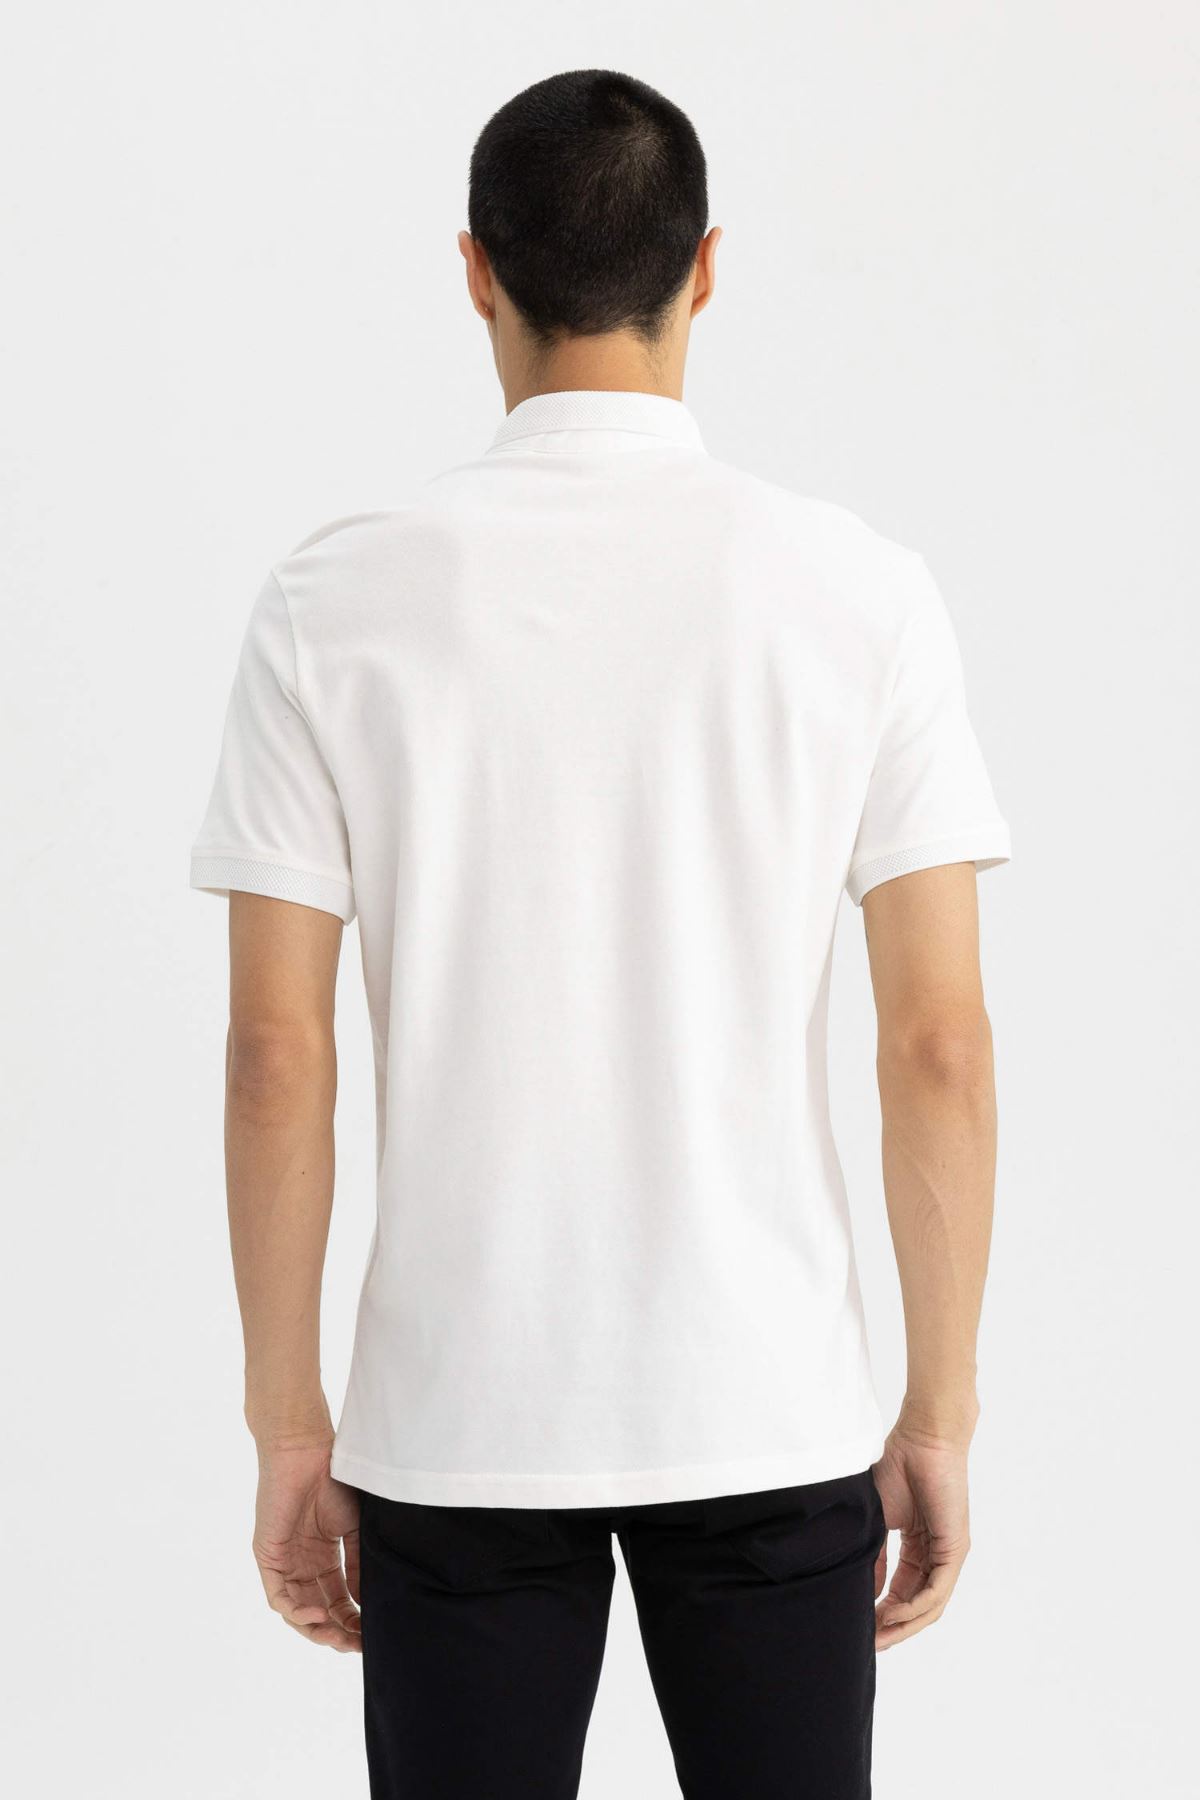 Defacto Erkek Beyaz Tişört - T5259AZ/WT32